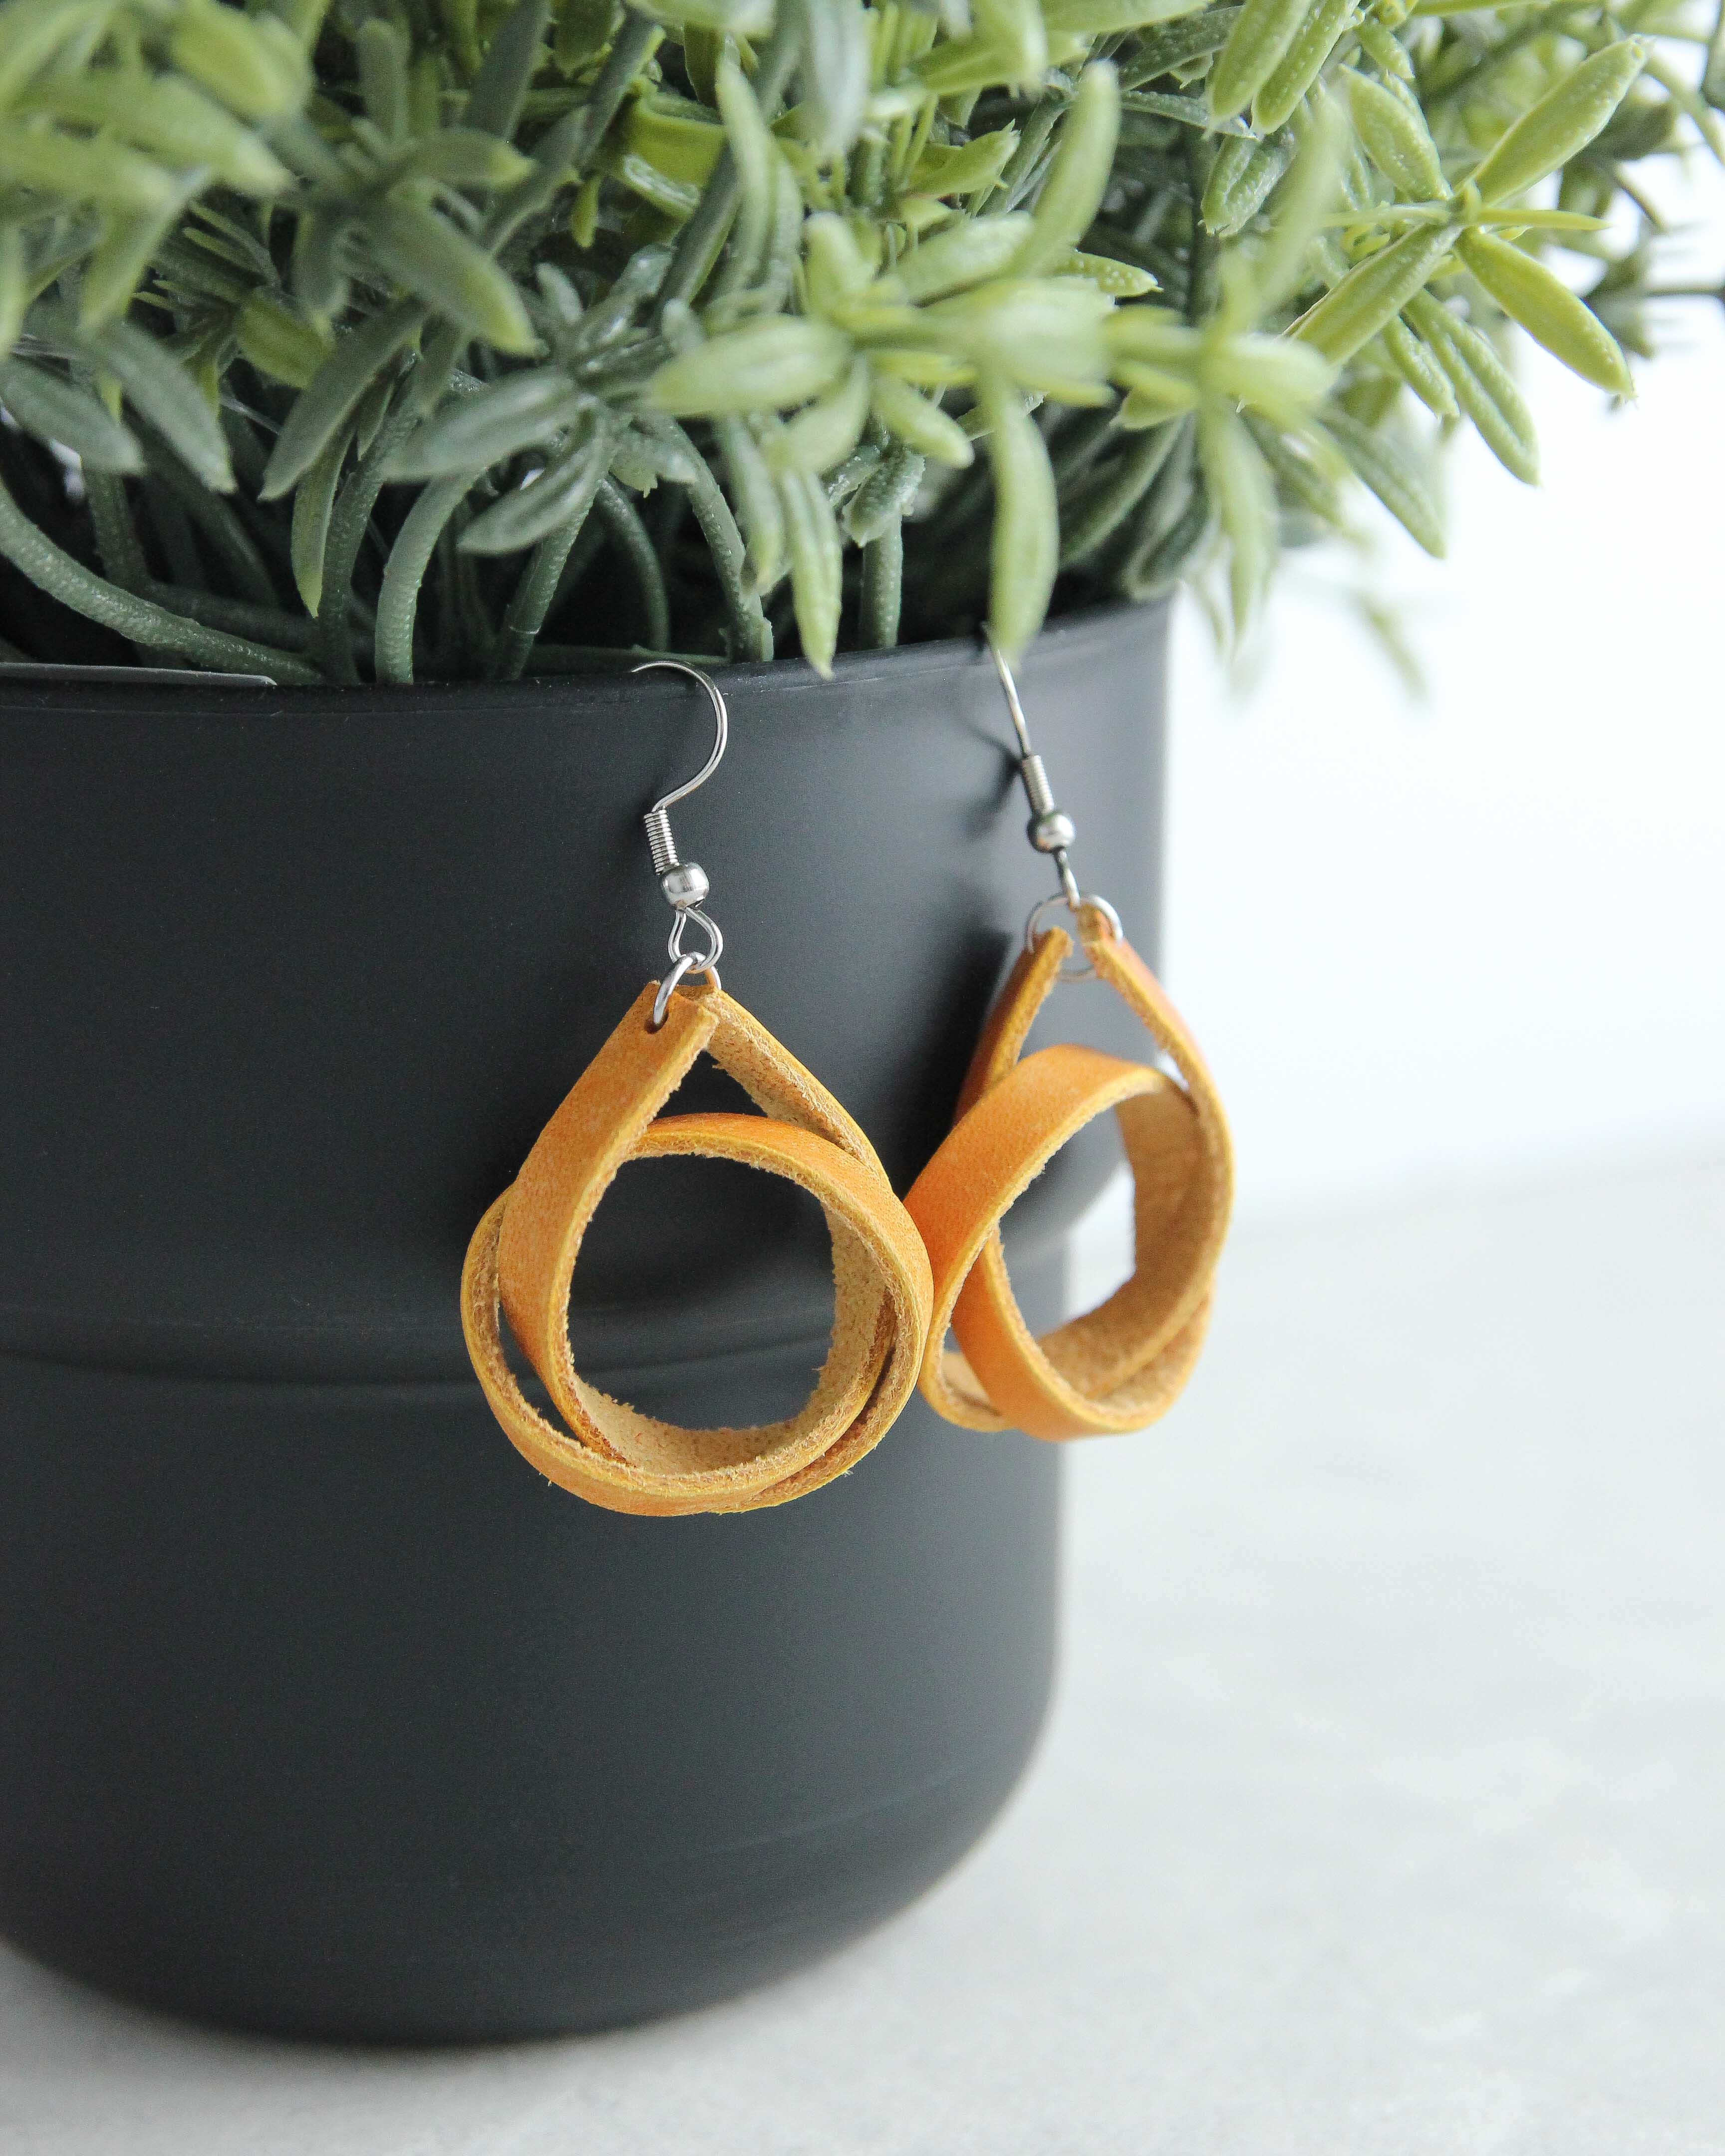 Earrings - "Loop" shape